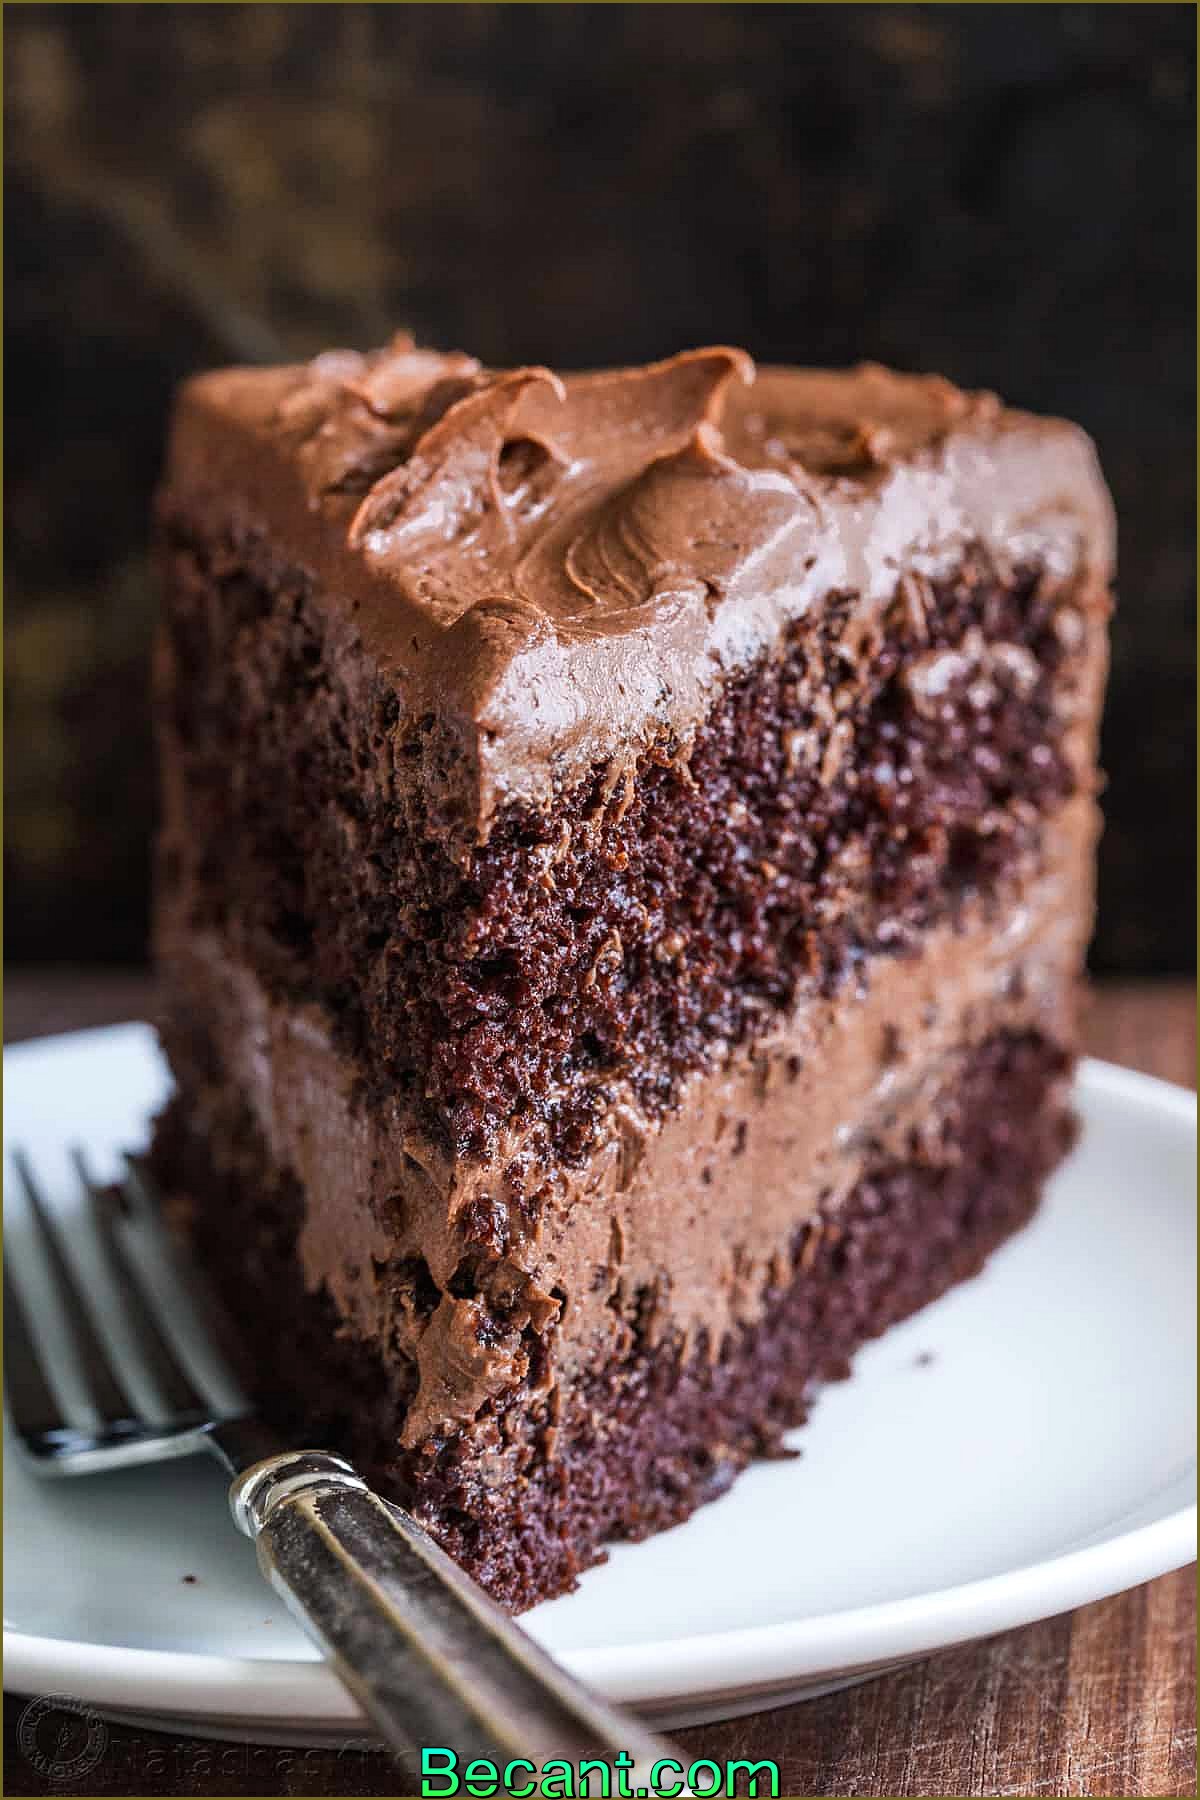 Morceau de gâteau au chocolat fait maison sur une assiette avec une fourchette